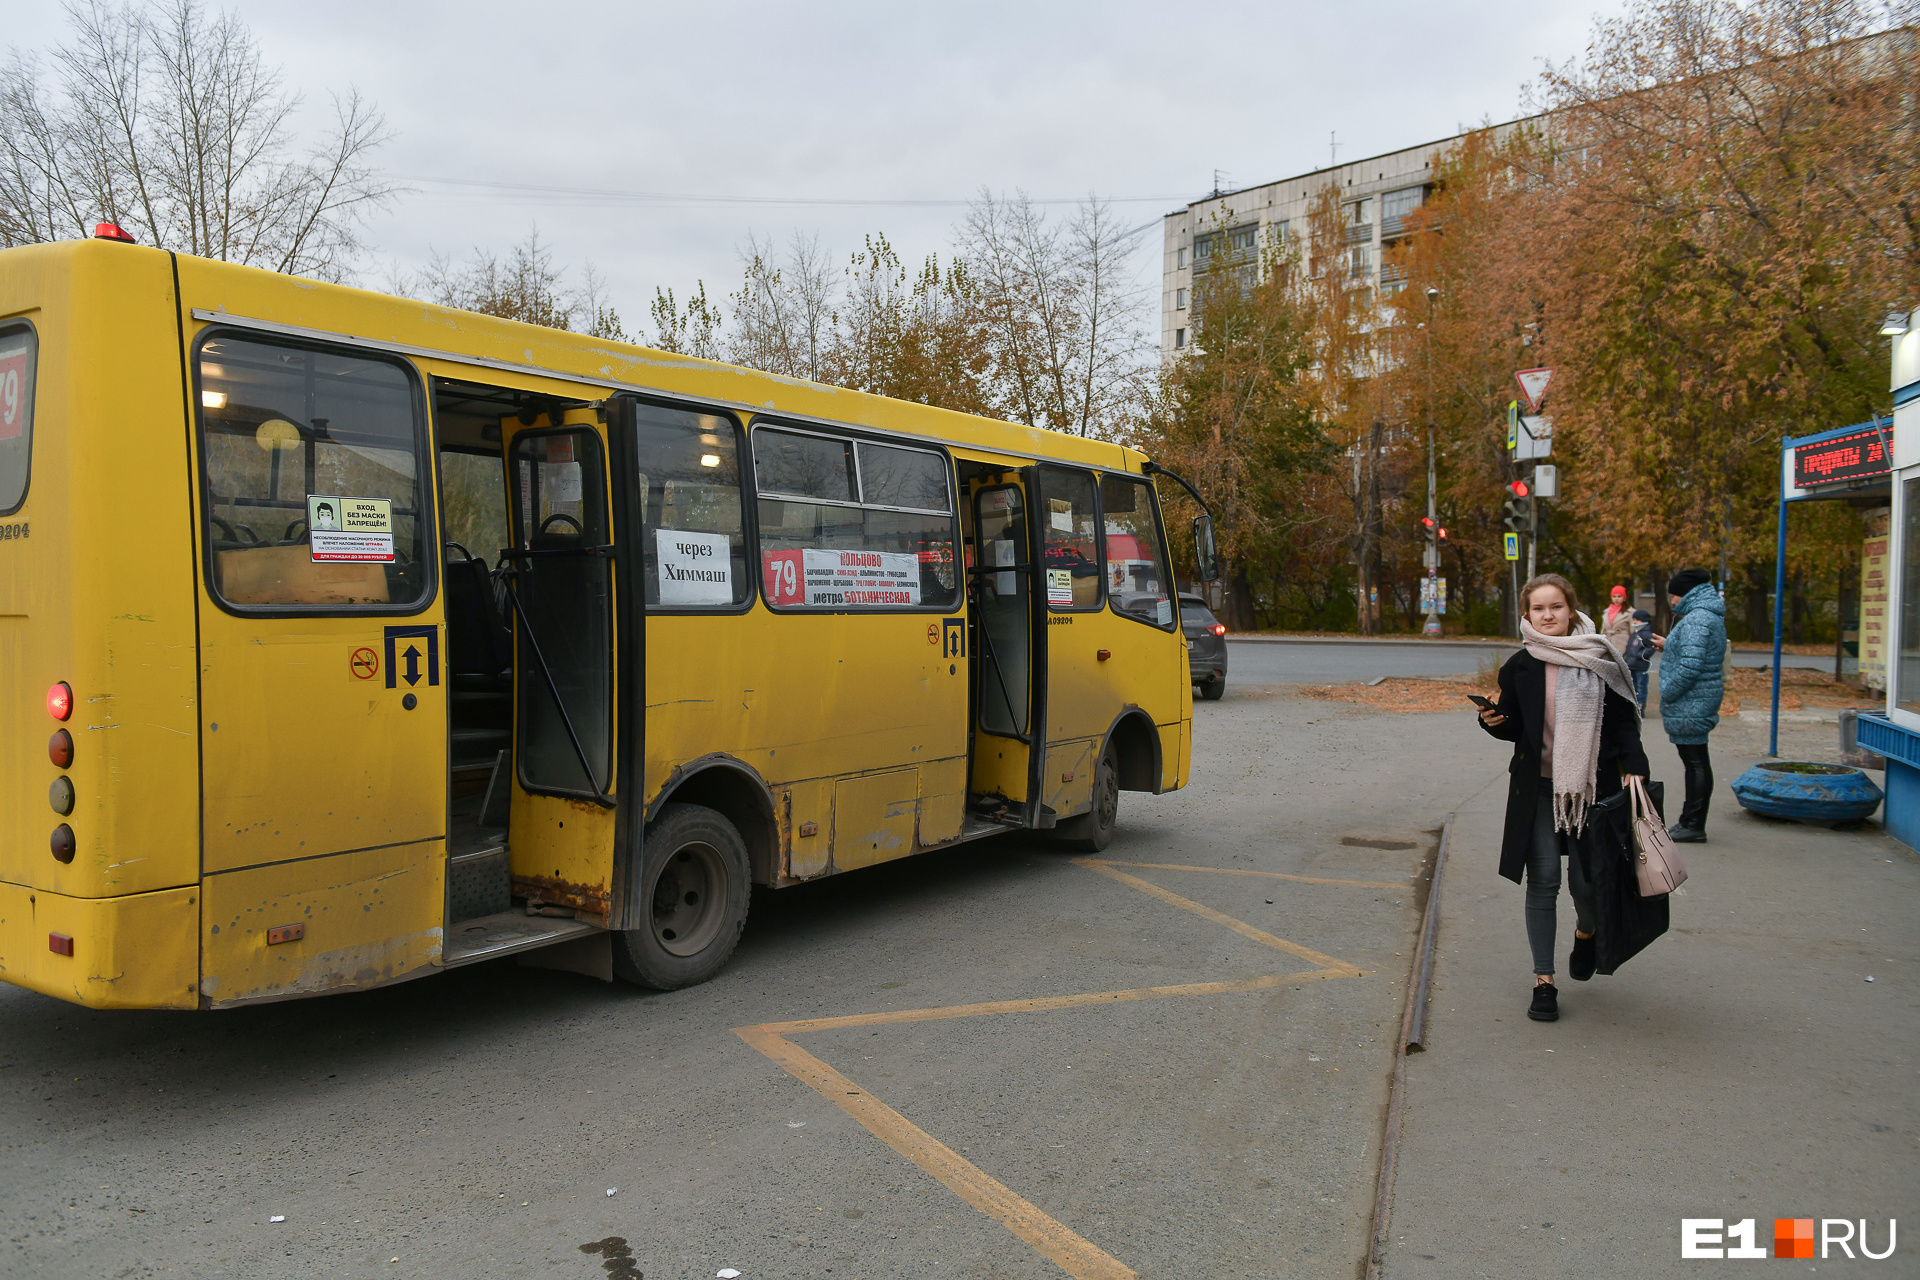 Автобусы № 79 ходят от микрорайона Кольцово до метро на Ботанике. Но их путь слишком долгий, поскольку маршрут проходит через Химмаш